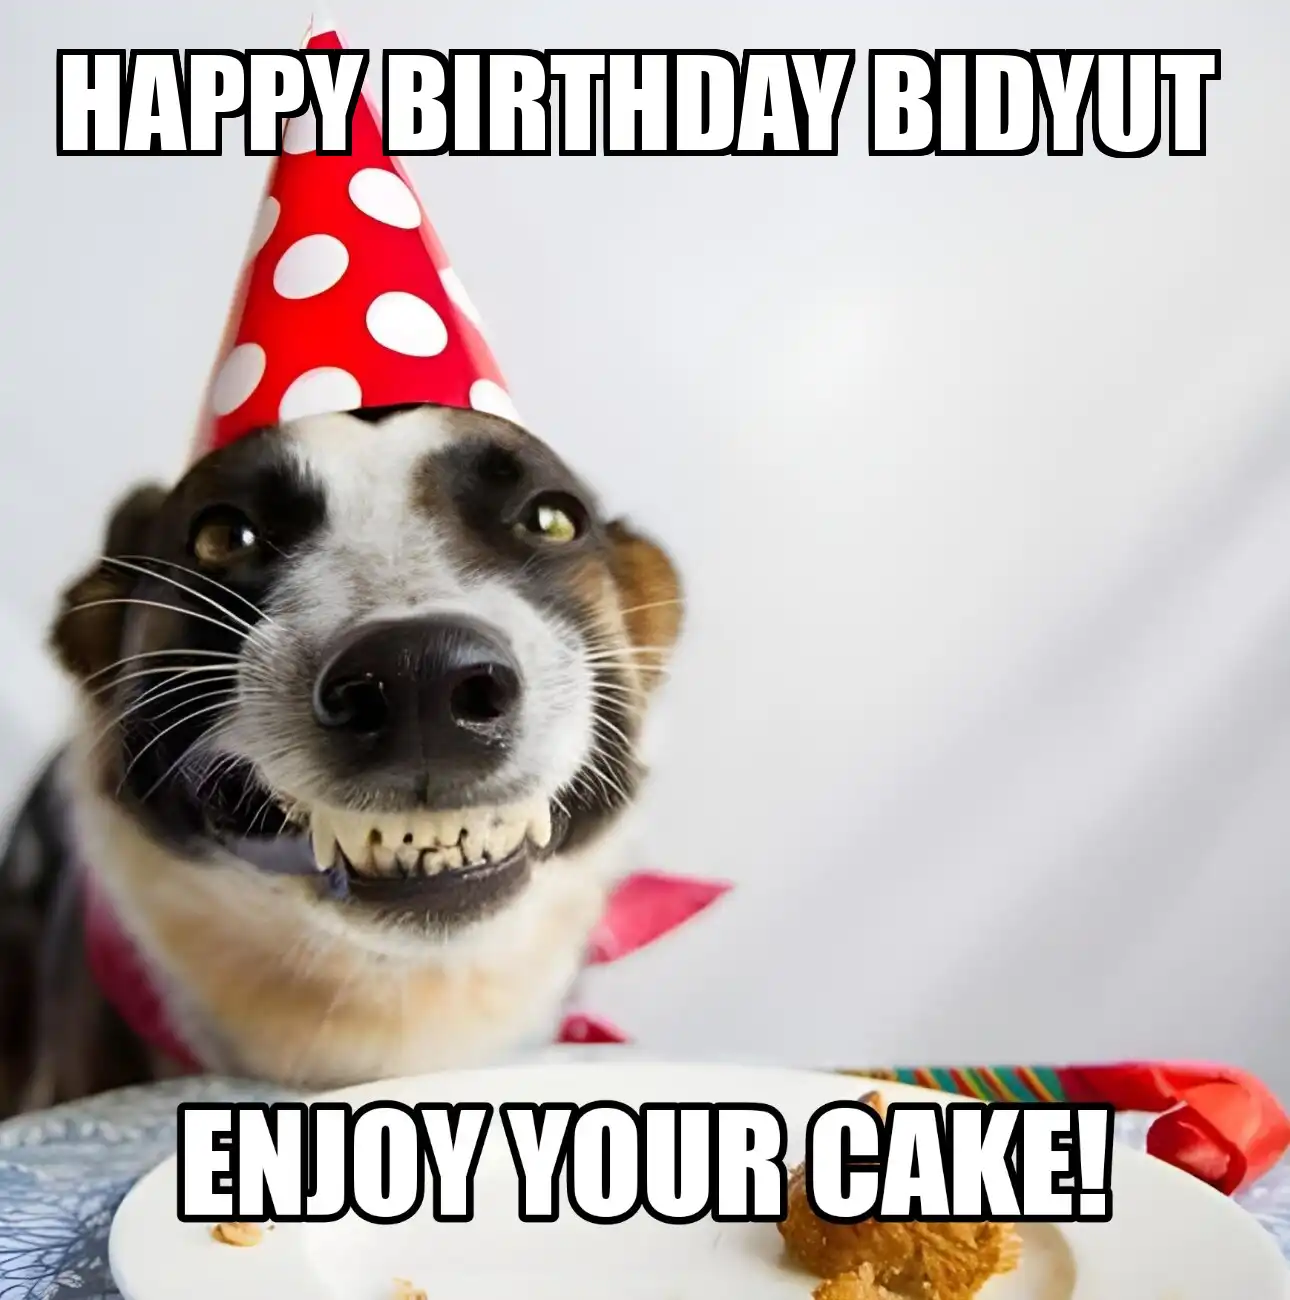 Happy Birthday Bidyut Enjoy Your Cake Dog Meme